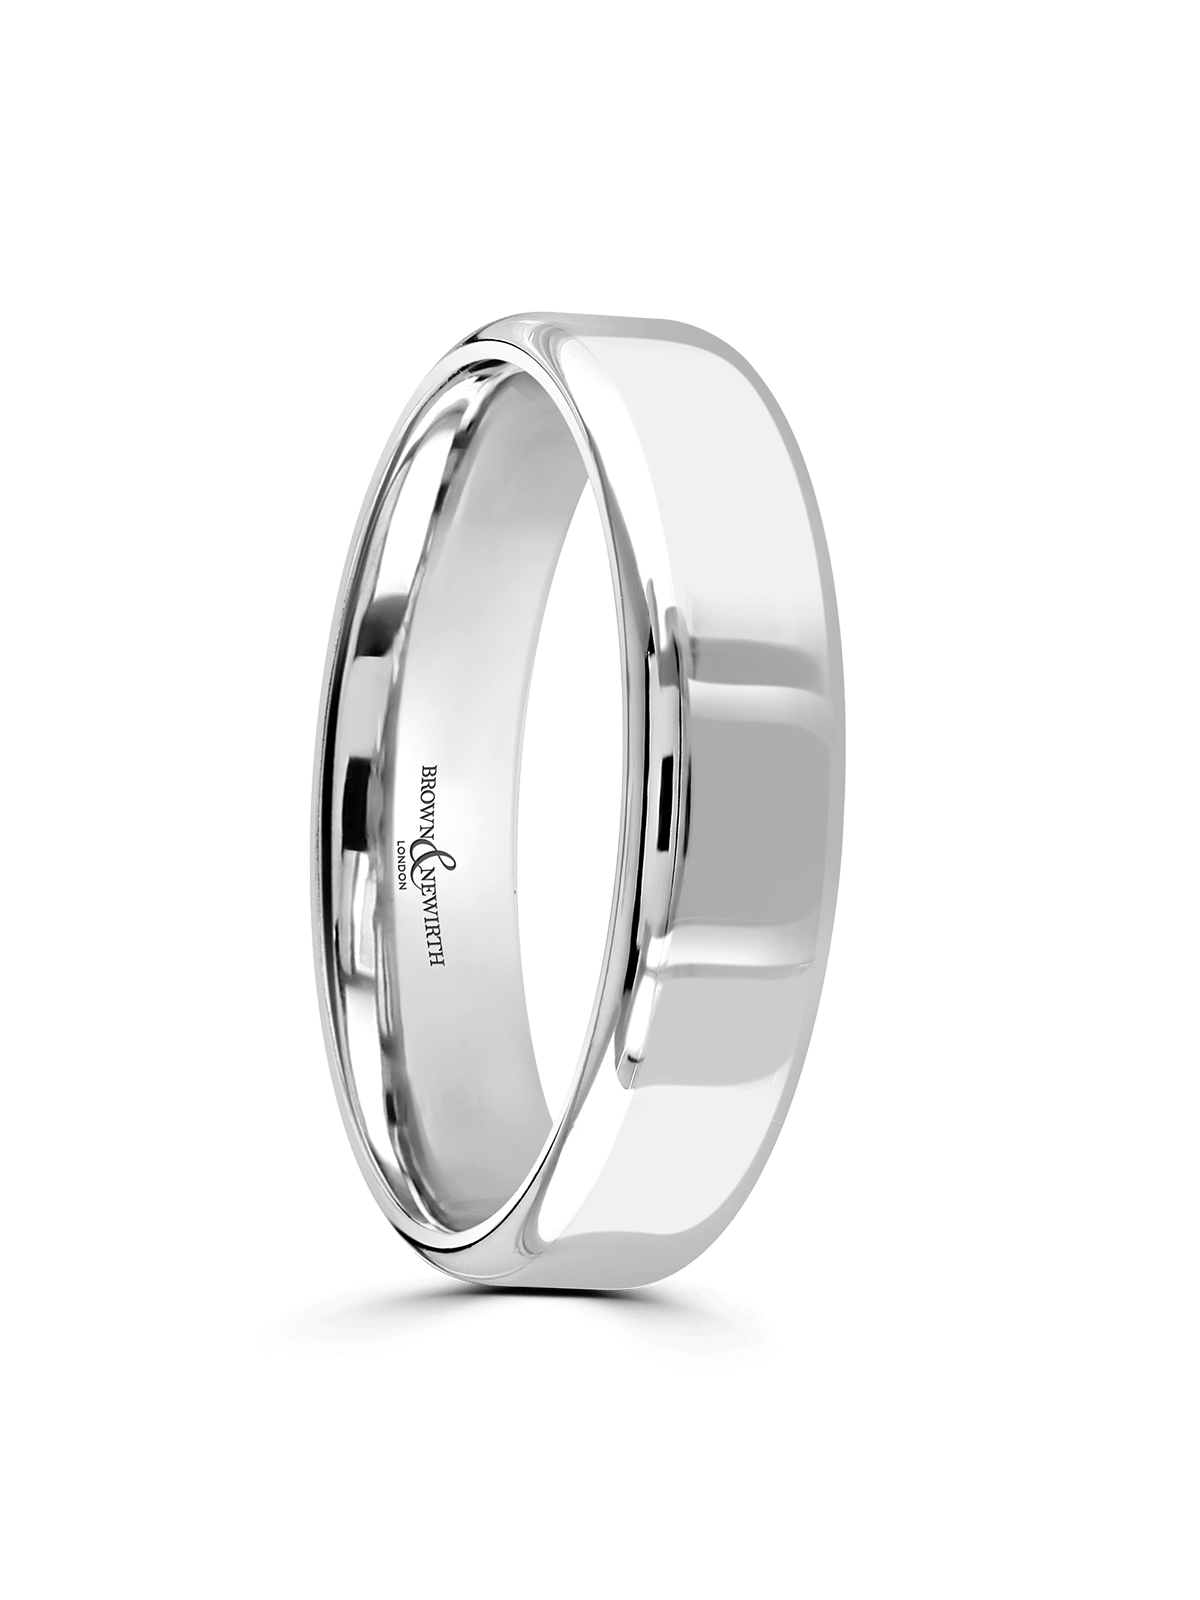 Brown & Newirth Honest 5mm Wedding Ring in Platinum